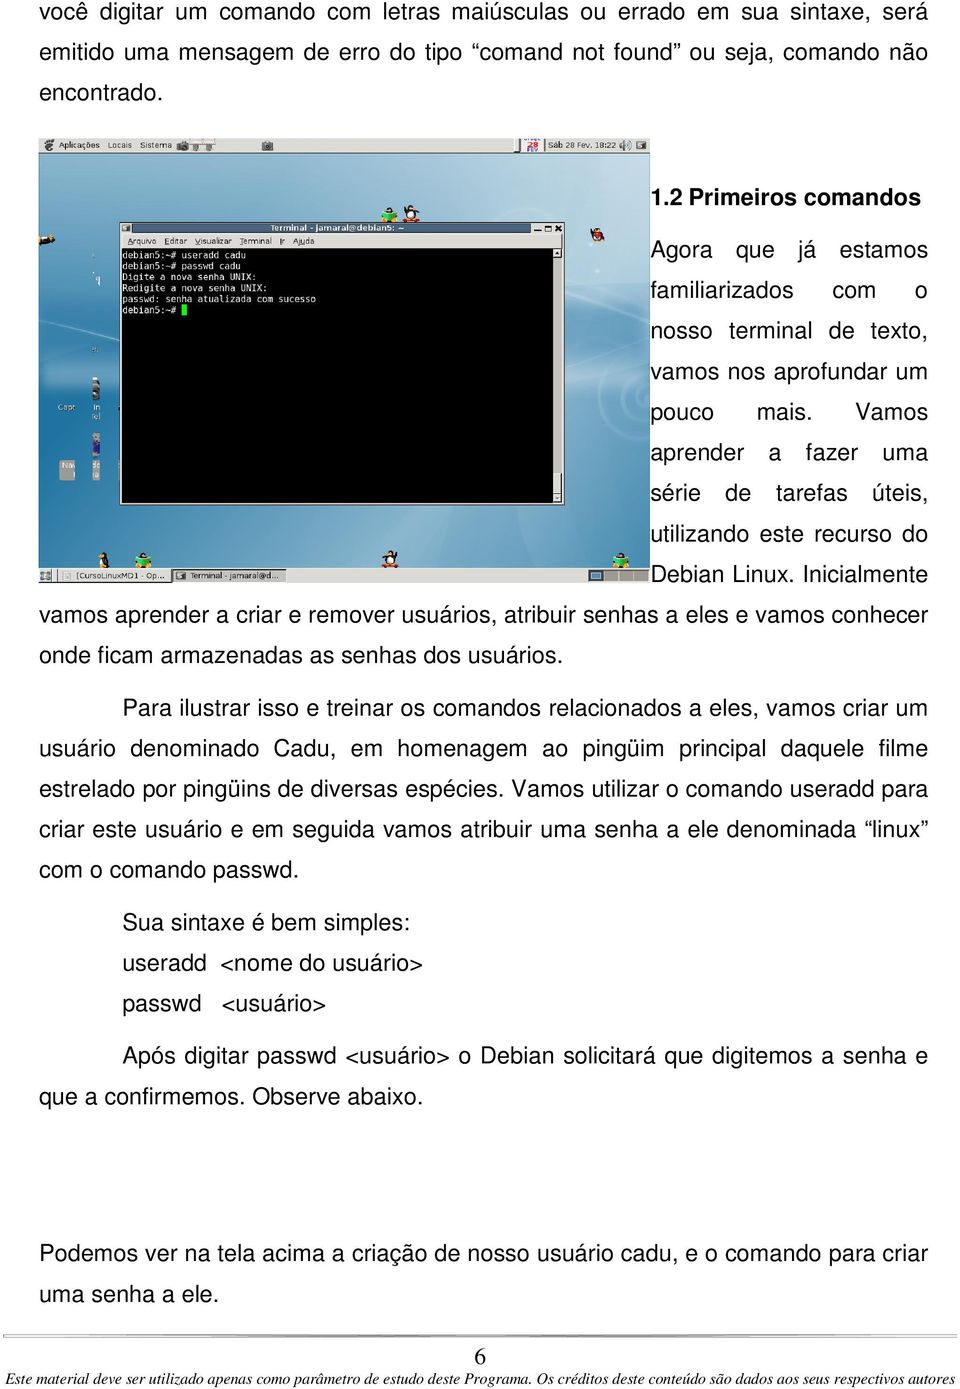 Vamos aprender a fazer uma série de tarefas úteis, utilizando este recurso do Debian Linux.